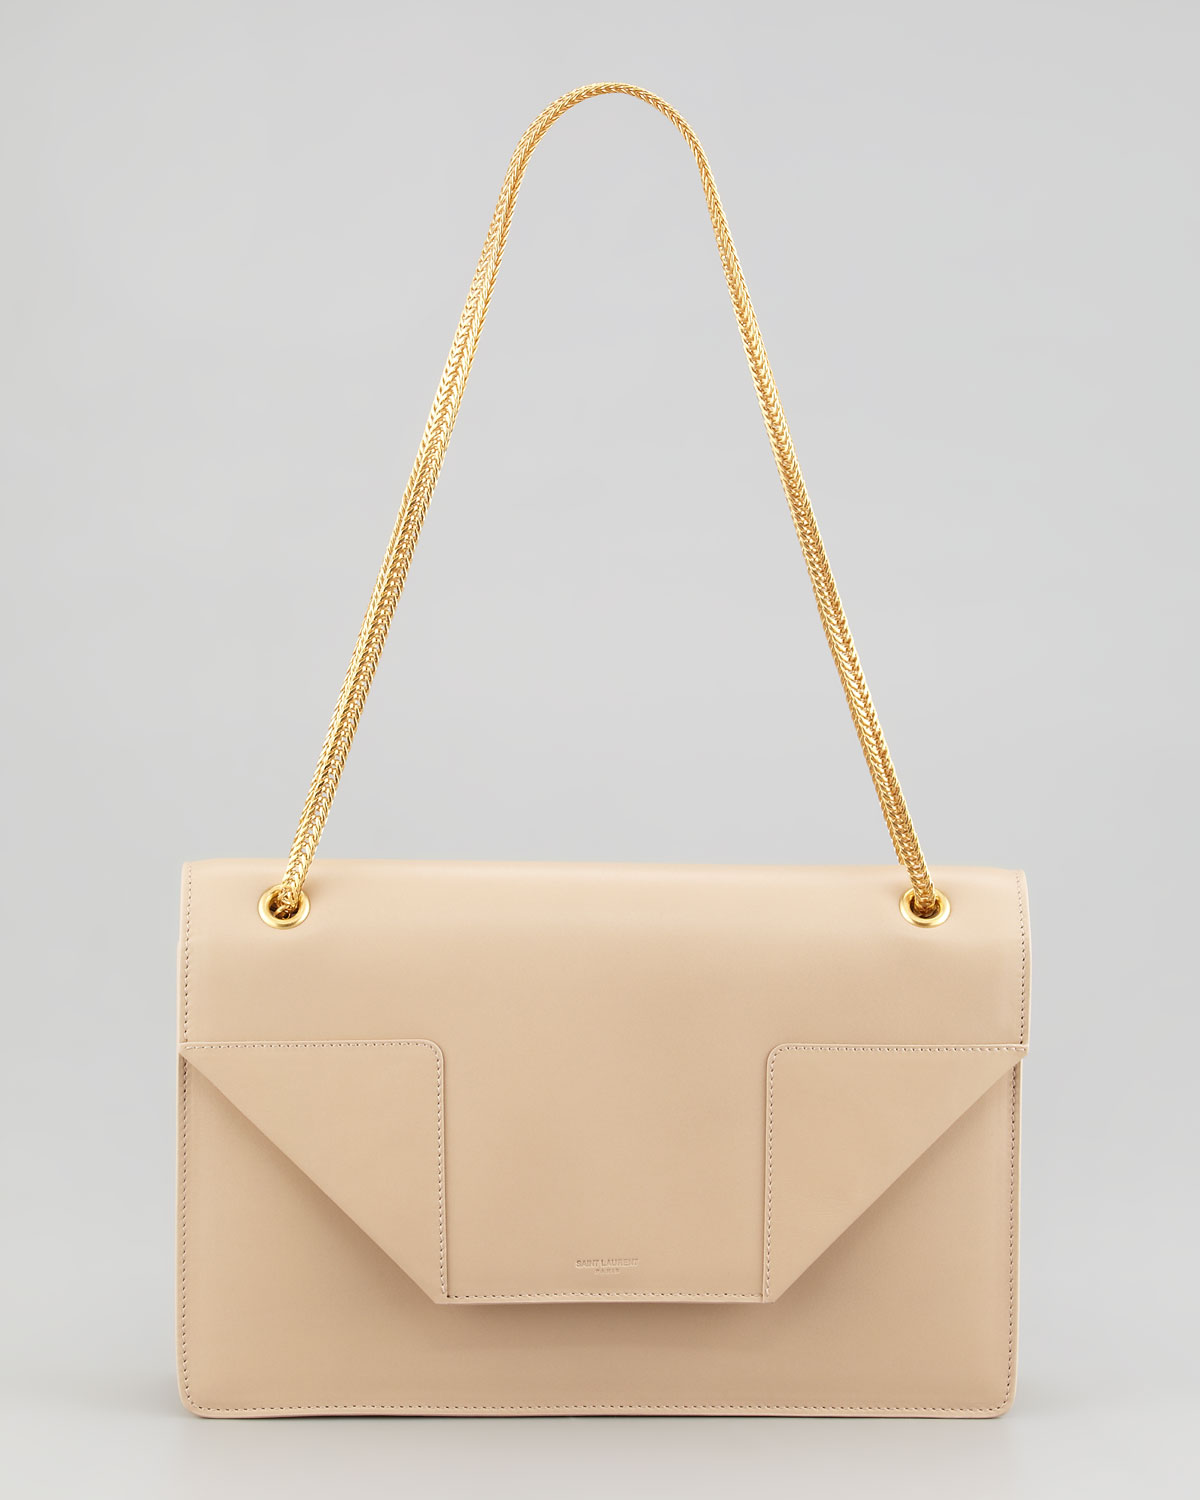 2021 New Fashion Woman Clutch bag -RYBW001 –